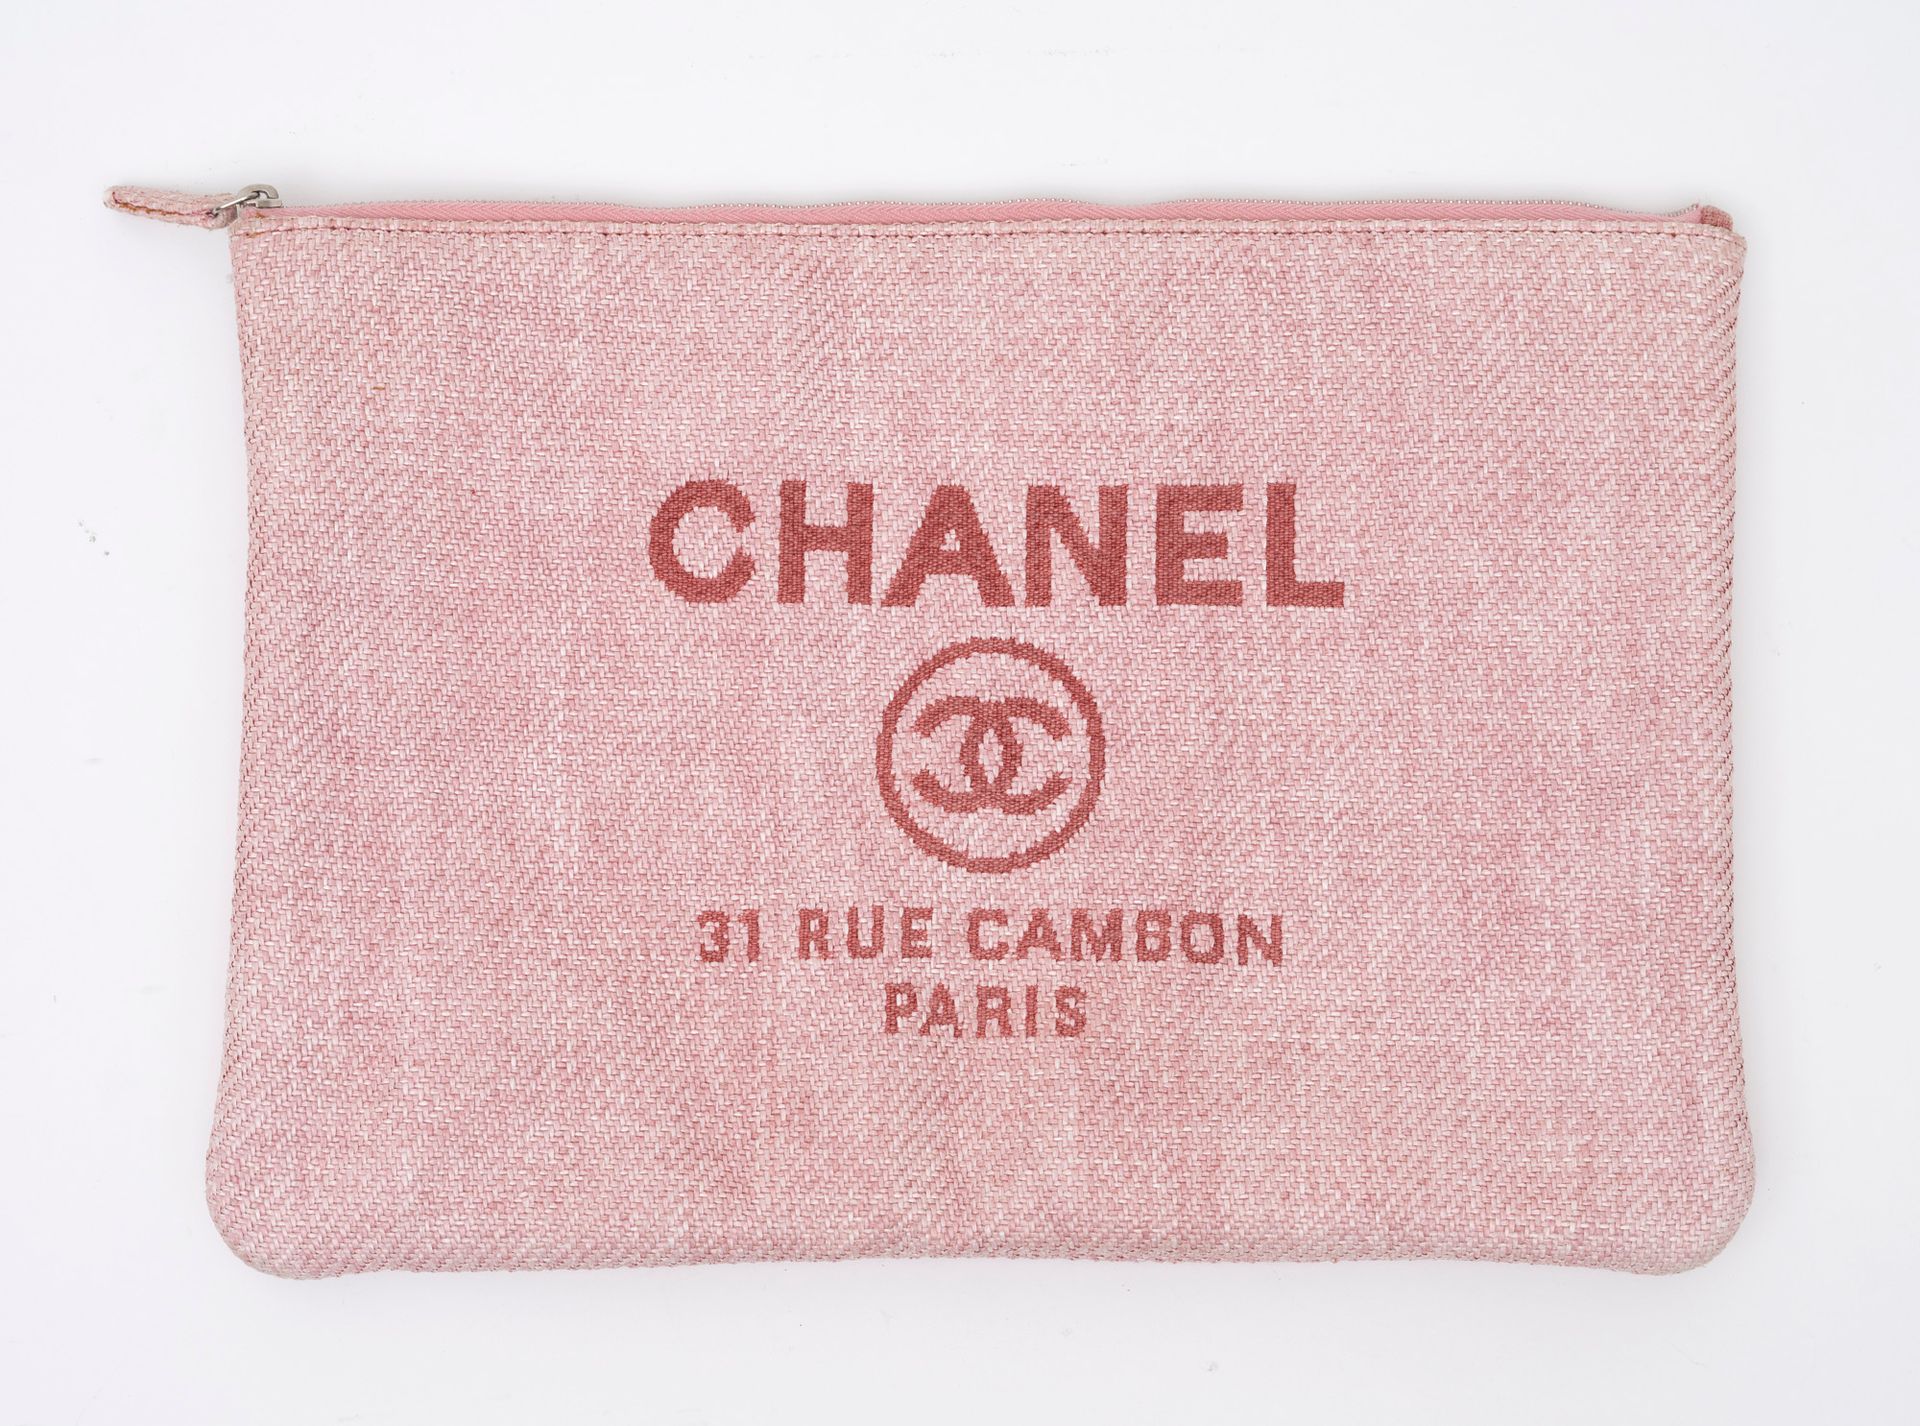 Chanel 香奈儿巴黎粉色织物手拿包 - 内有白色织物 - 拉链封口 - 约2014年 - 真品标签 - 保存状况良好 - 33 x 24 cm